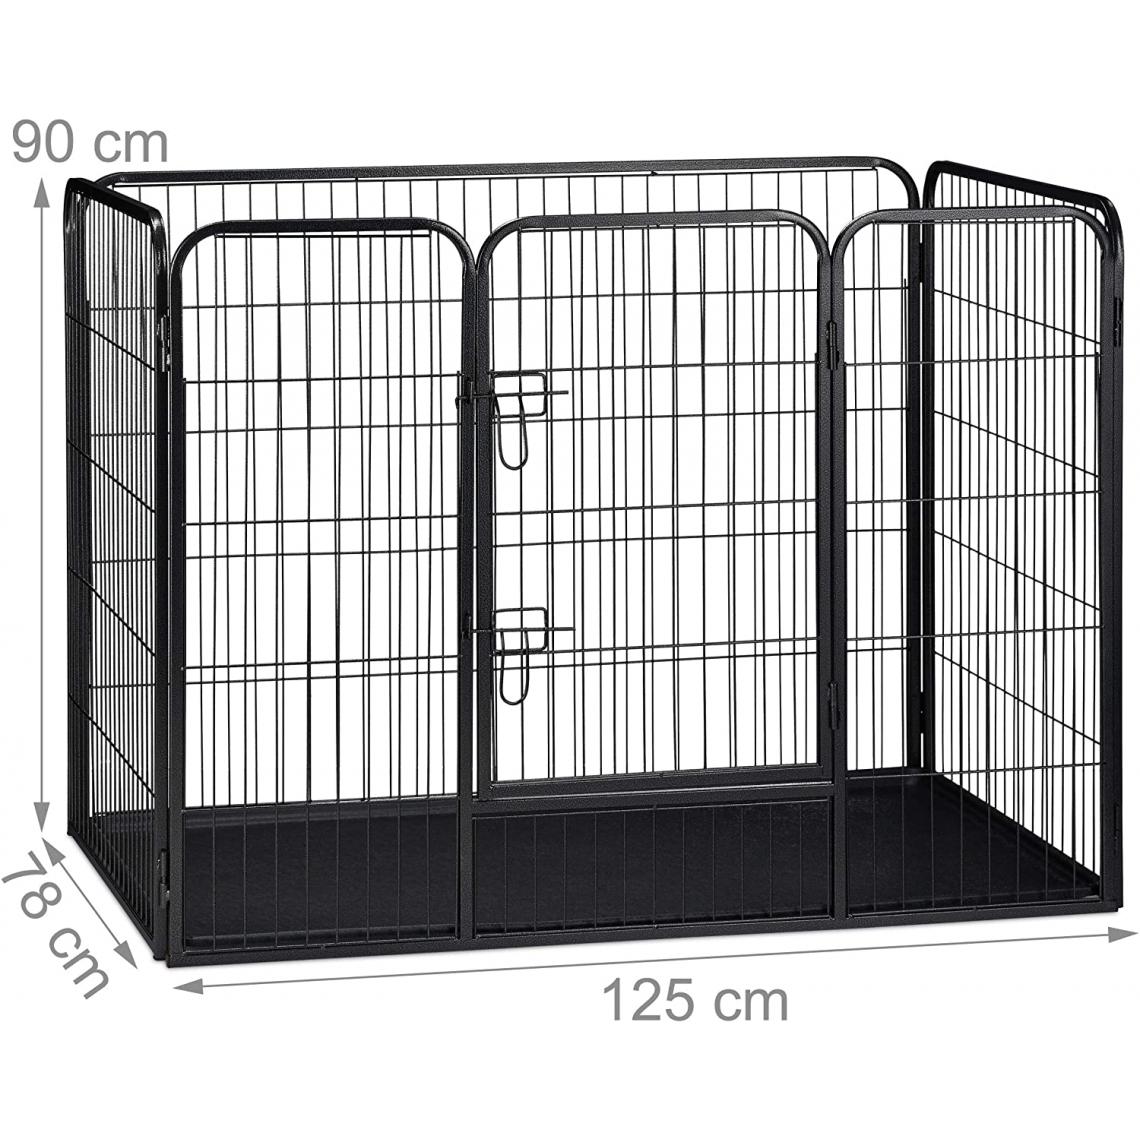 Helloshop26 - Enclos cage pour chien avec sol 90 x 125 x 78 cm noir 13_0000965 - Equipement de transport pour chat